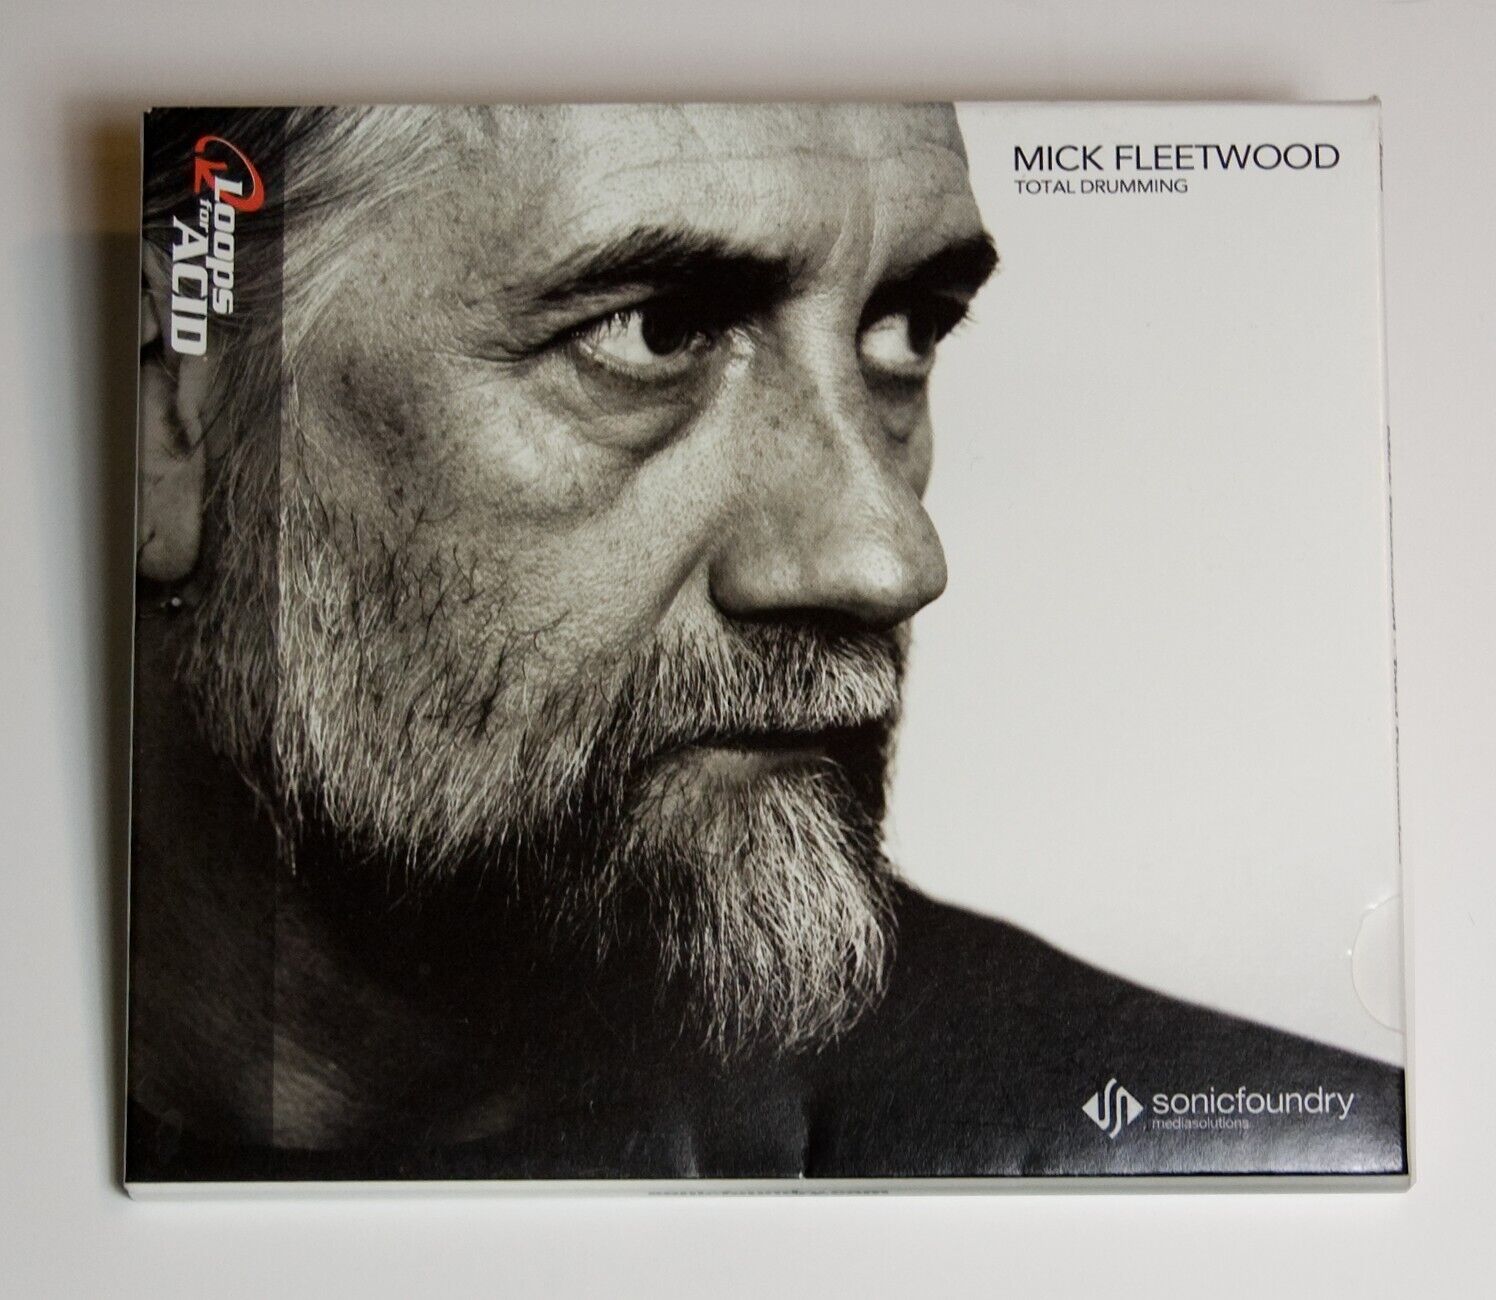 Mick Fleetwood Total Drumming AUDIO CD Sony Sound Series - Acid Loops & Samples